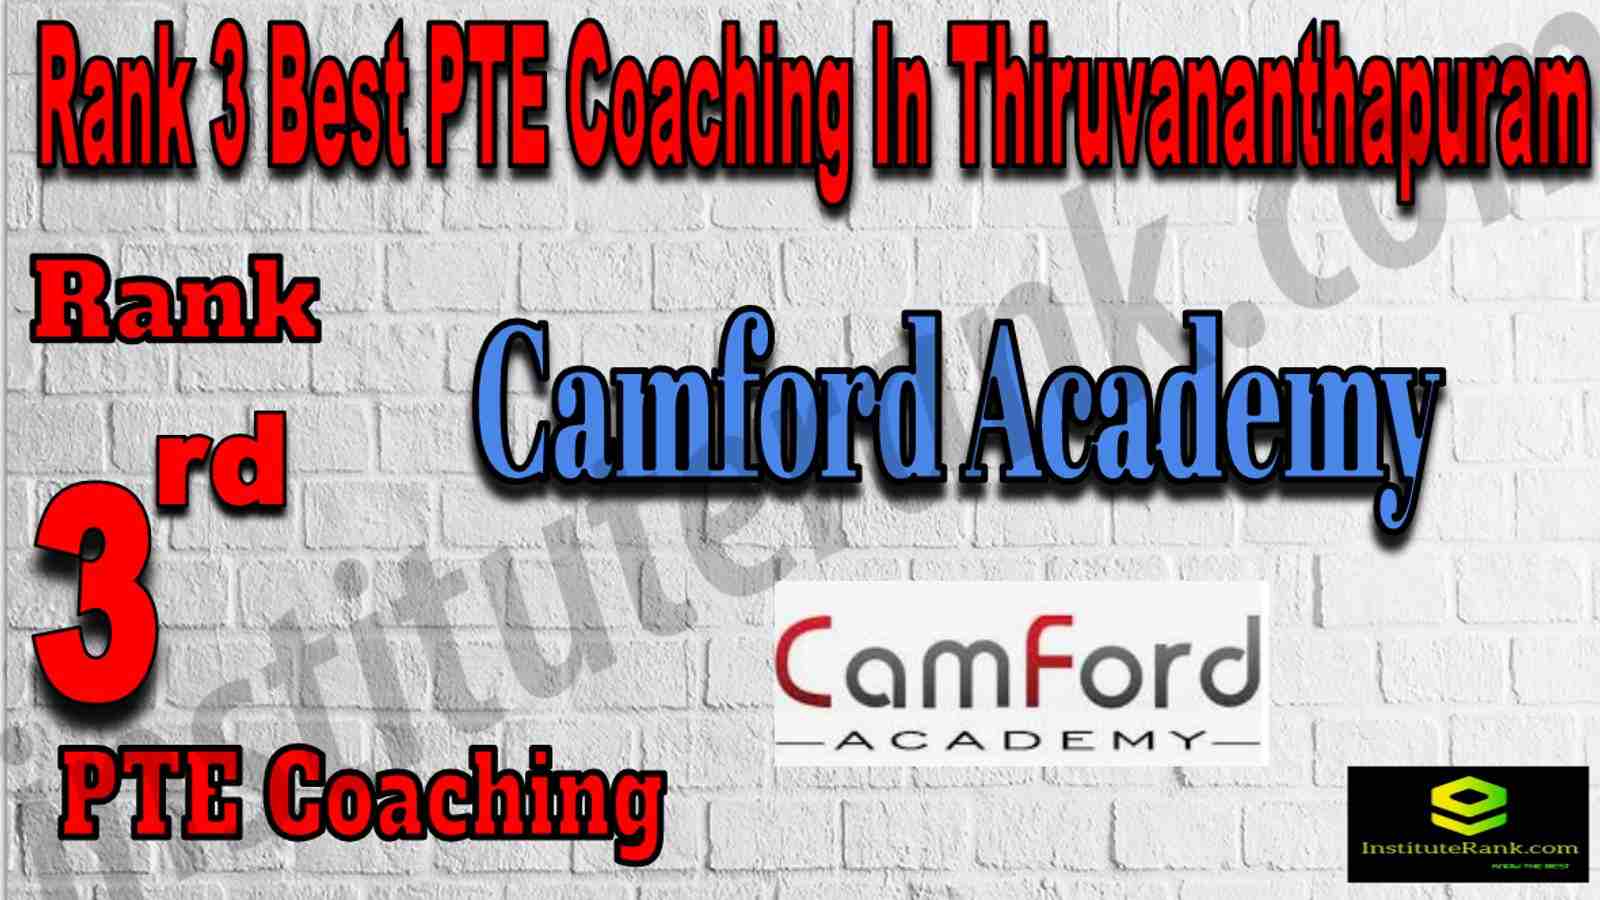 Rank 3 Best PTE Coaching In Thiruvananthapuram